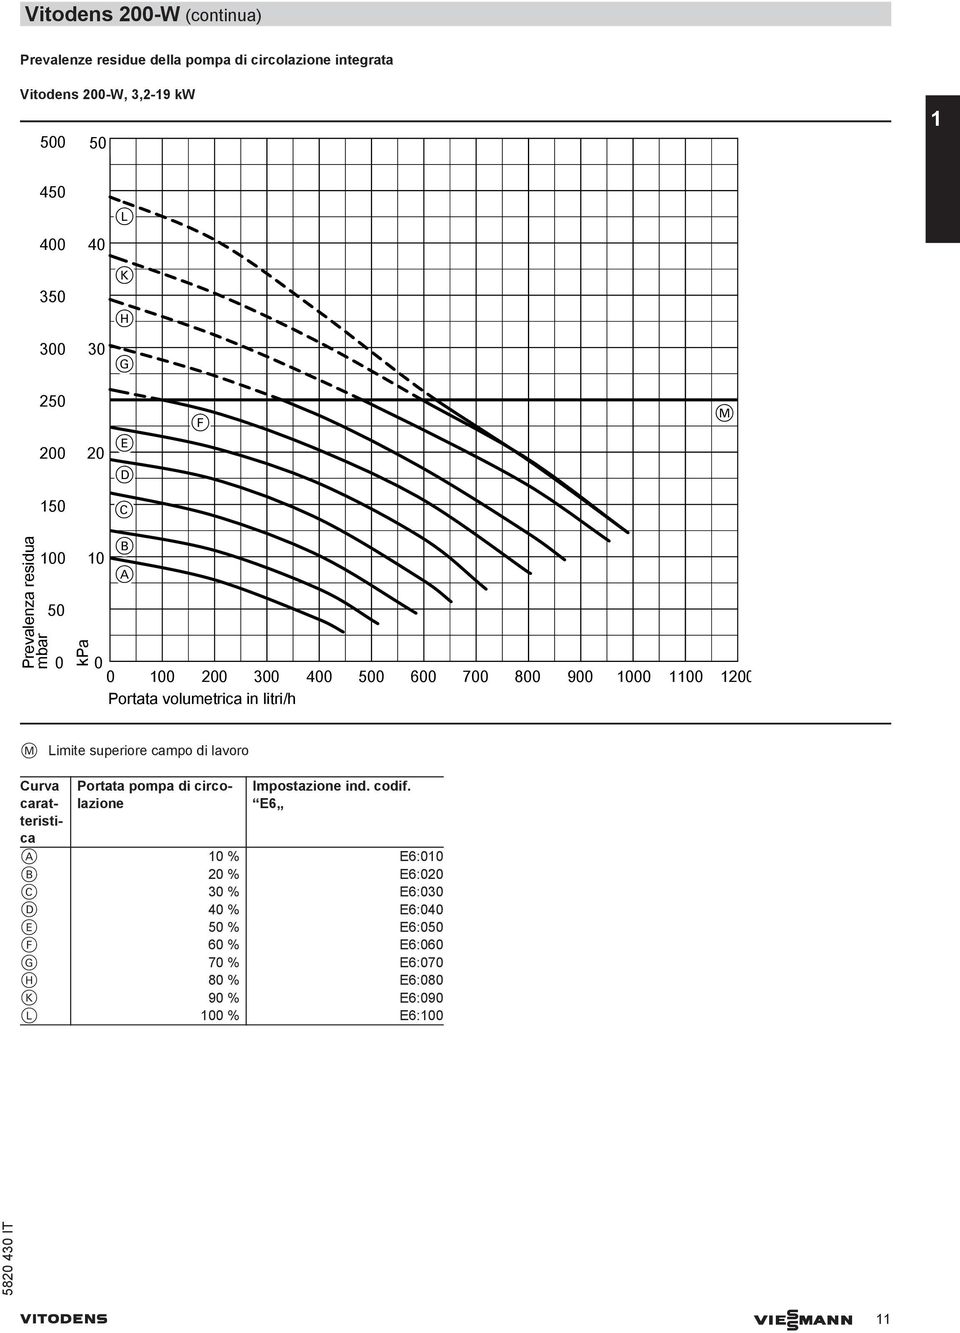 volumetrica in litri/h M Limite superiore campo di lavoro Curva caratteristica Portata pompa di circolazione Impostazione ind. codif.